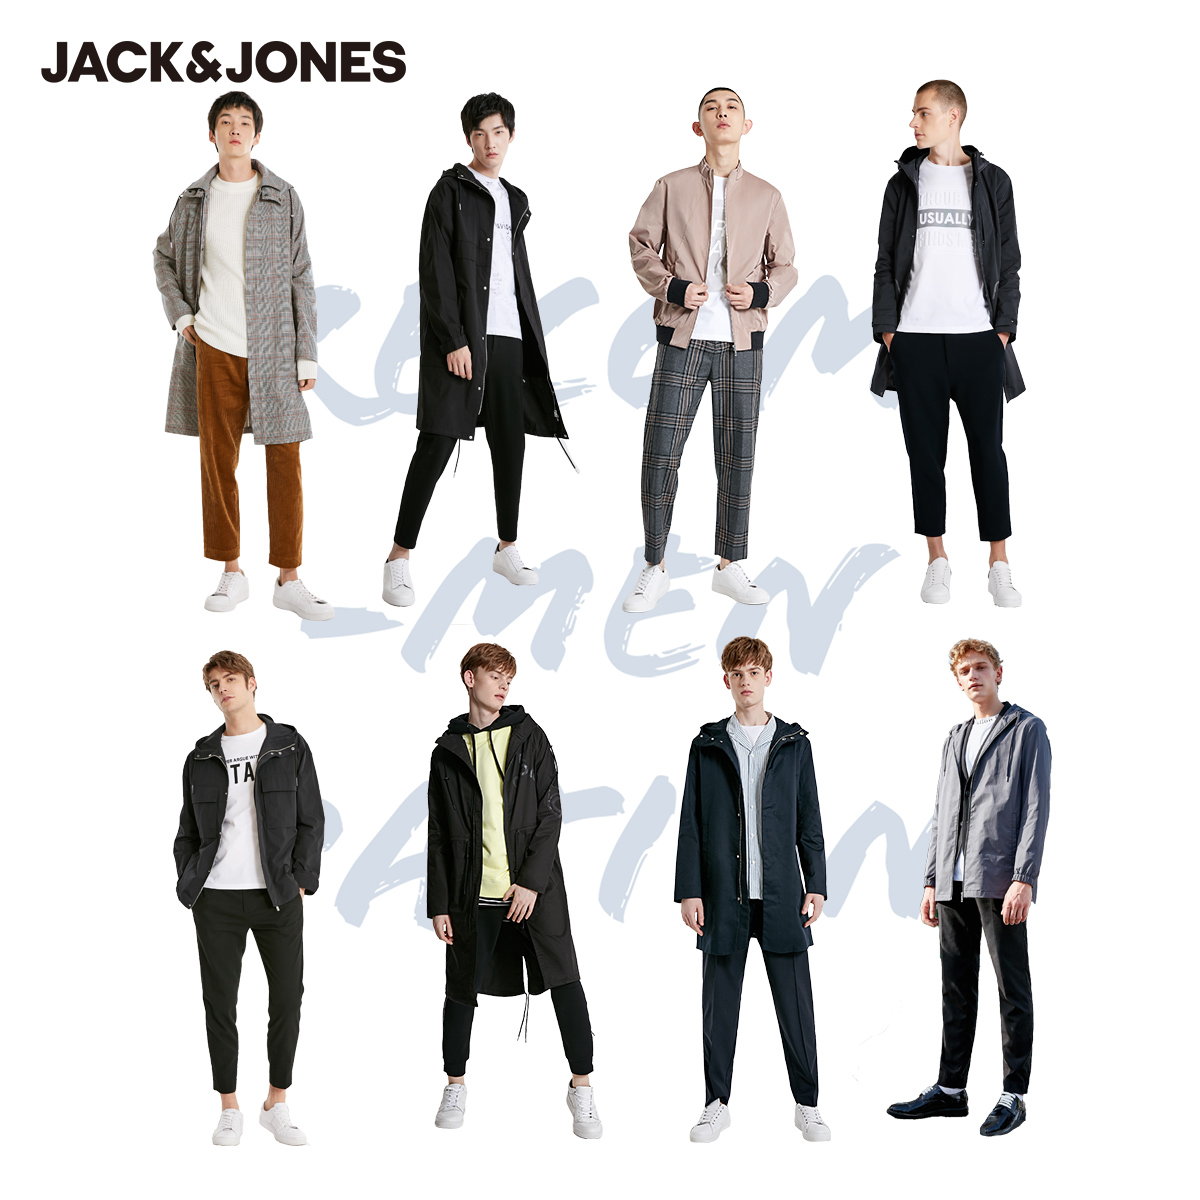 Jack Jones 杰克琼斯 男式休闲风衣外套 凑单双重优惠折后￥126.4/件起包邮 12款可选